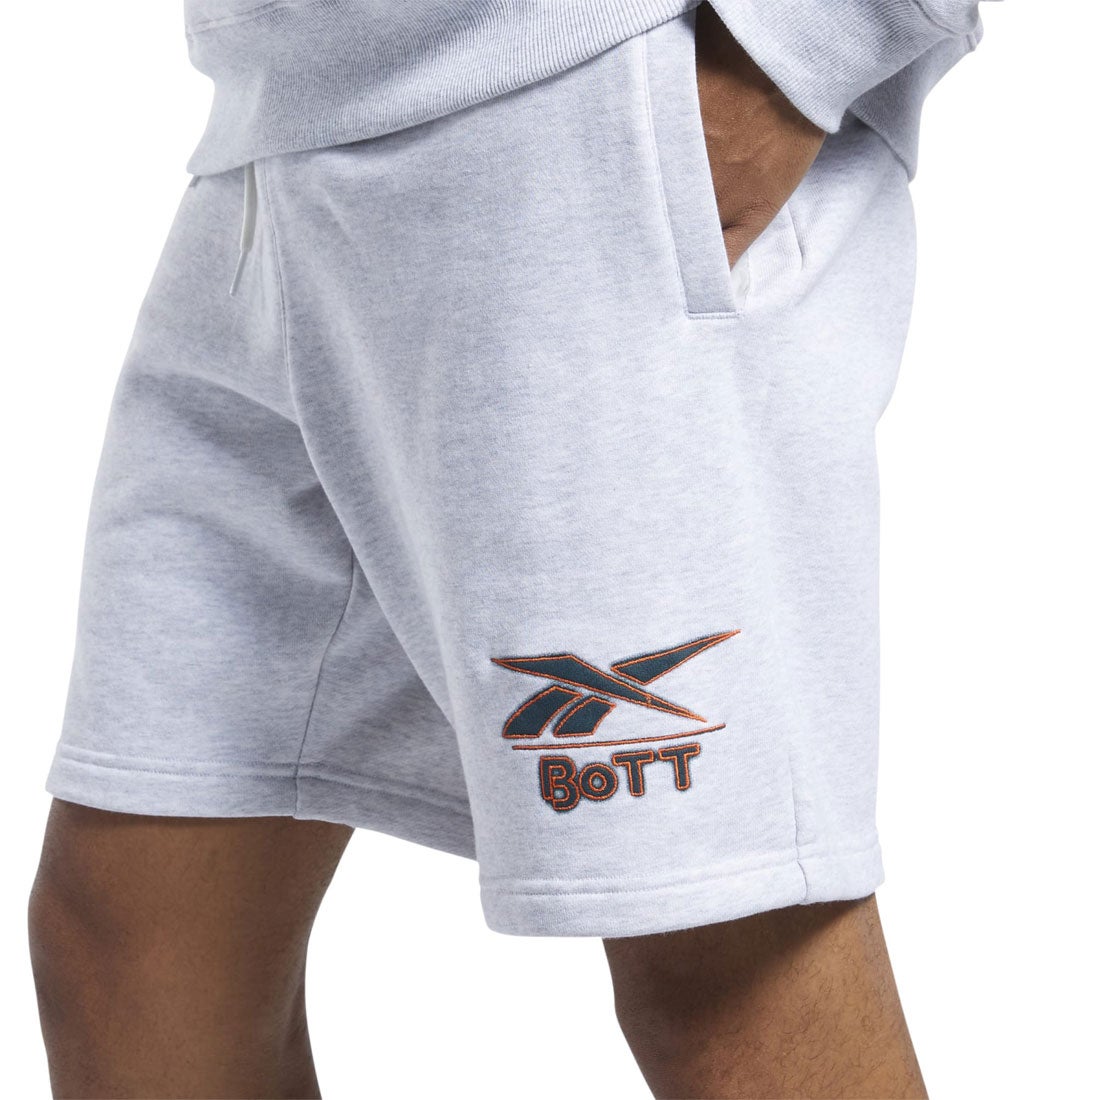 ボット ニット ショーツ / BoTT Knit Shorts （ライトグレイヘザー 